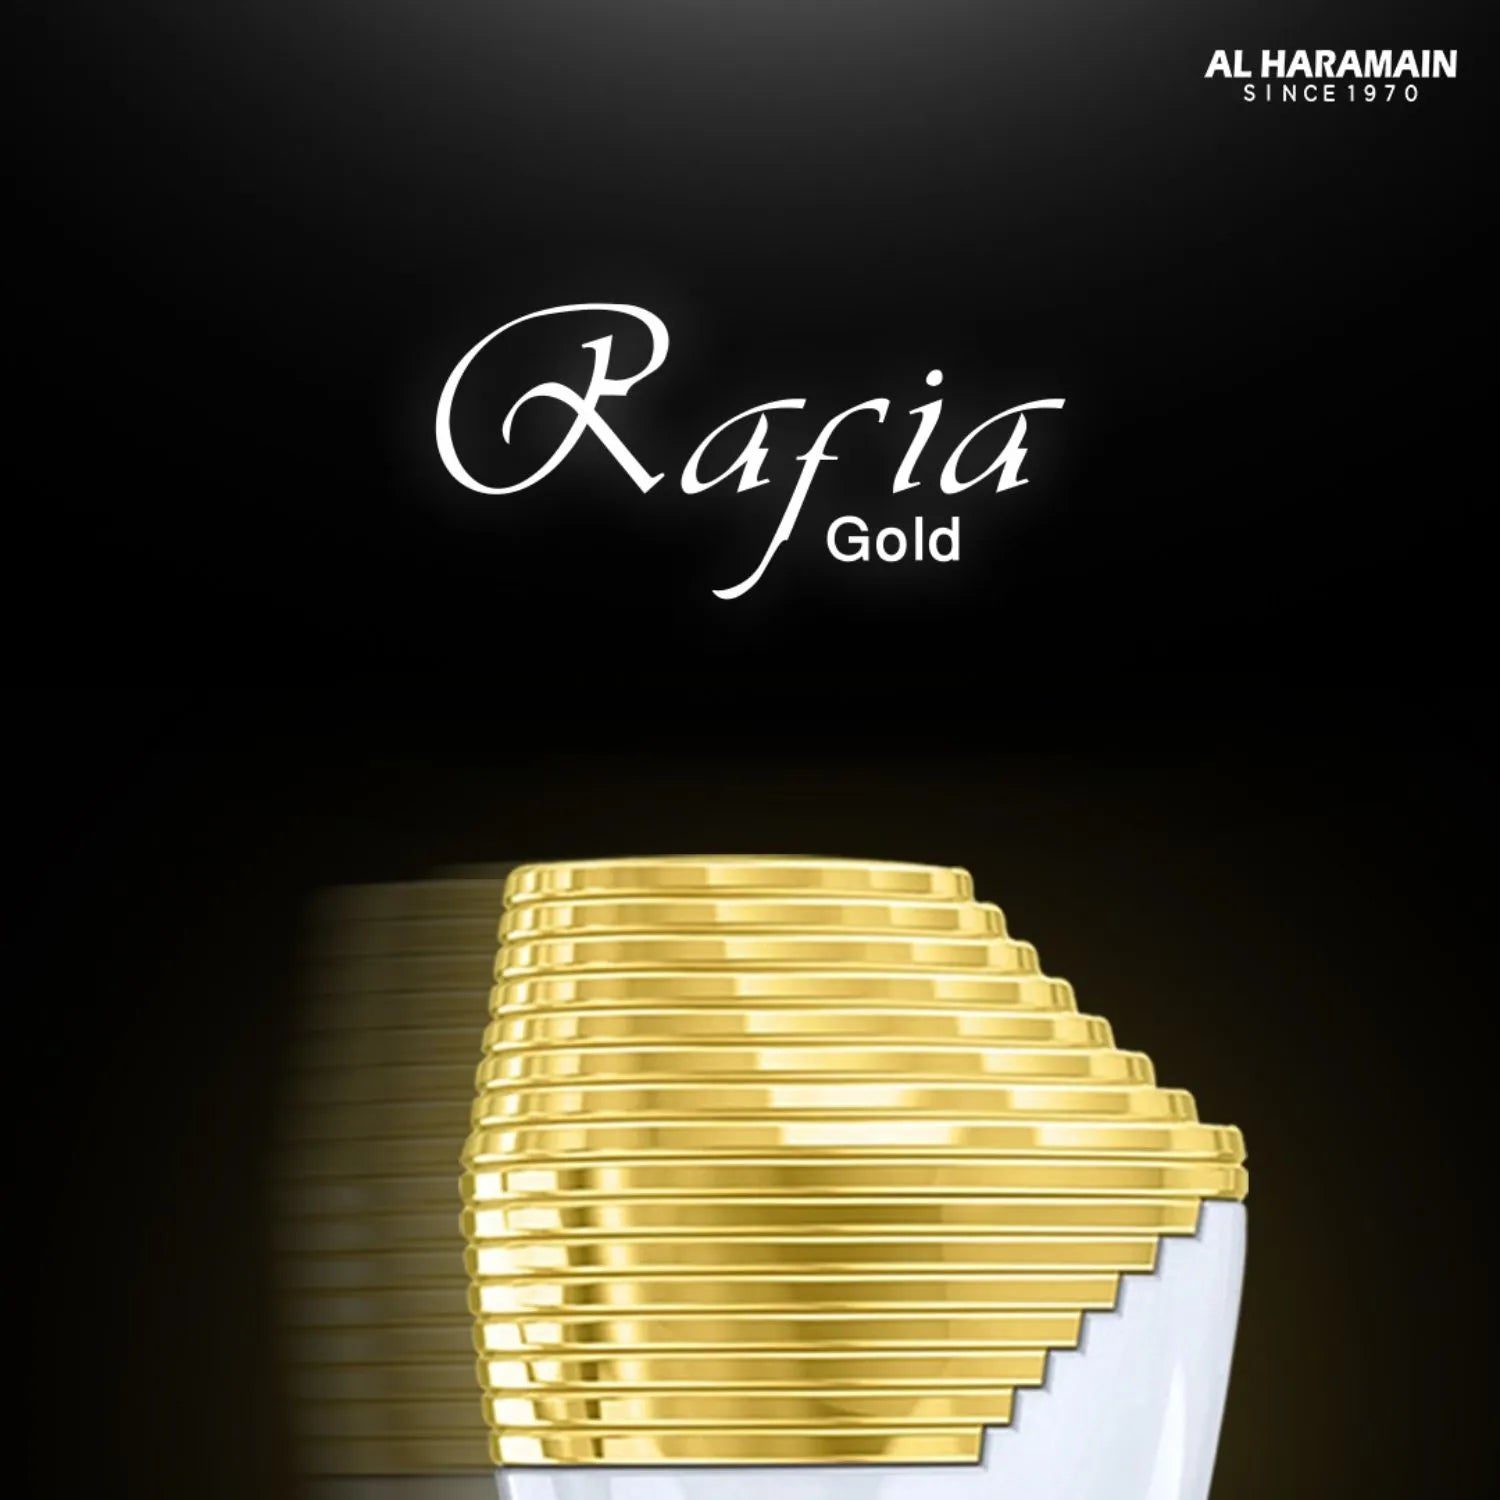 Haramain Rafia Gold Perfume Image